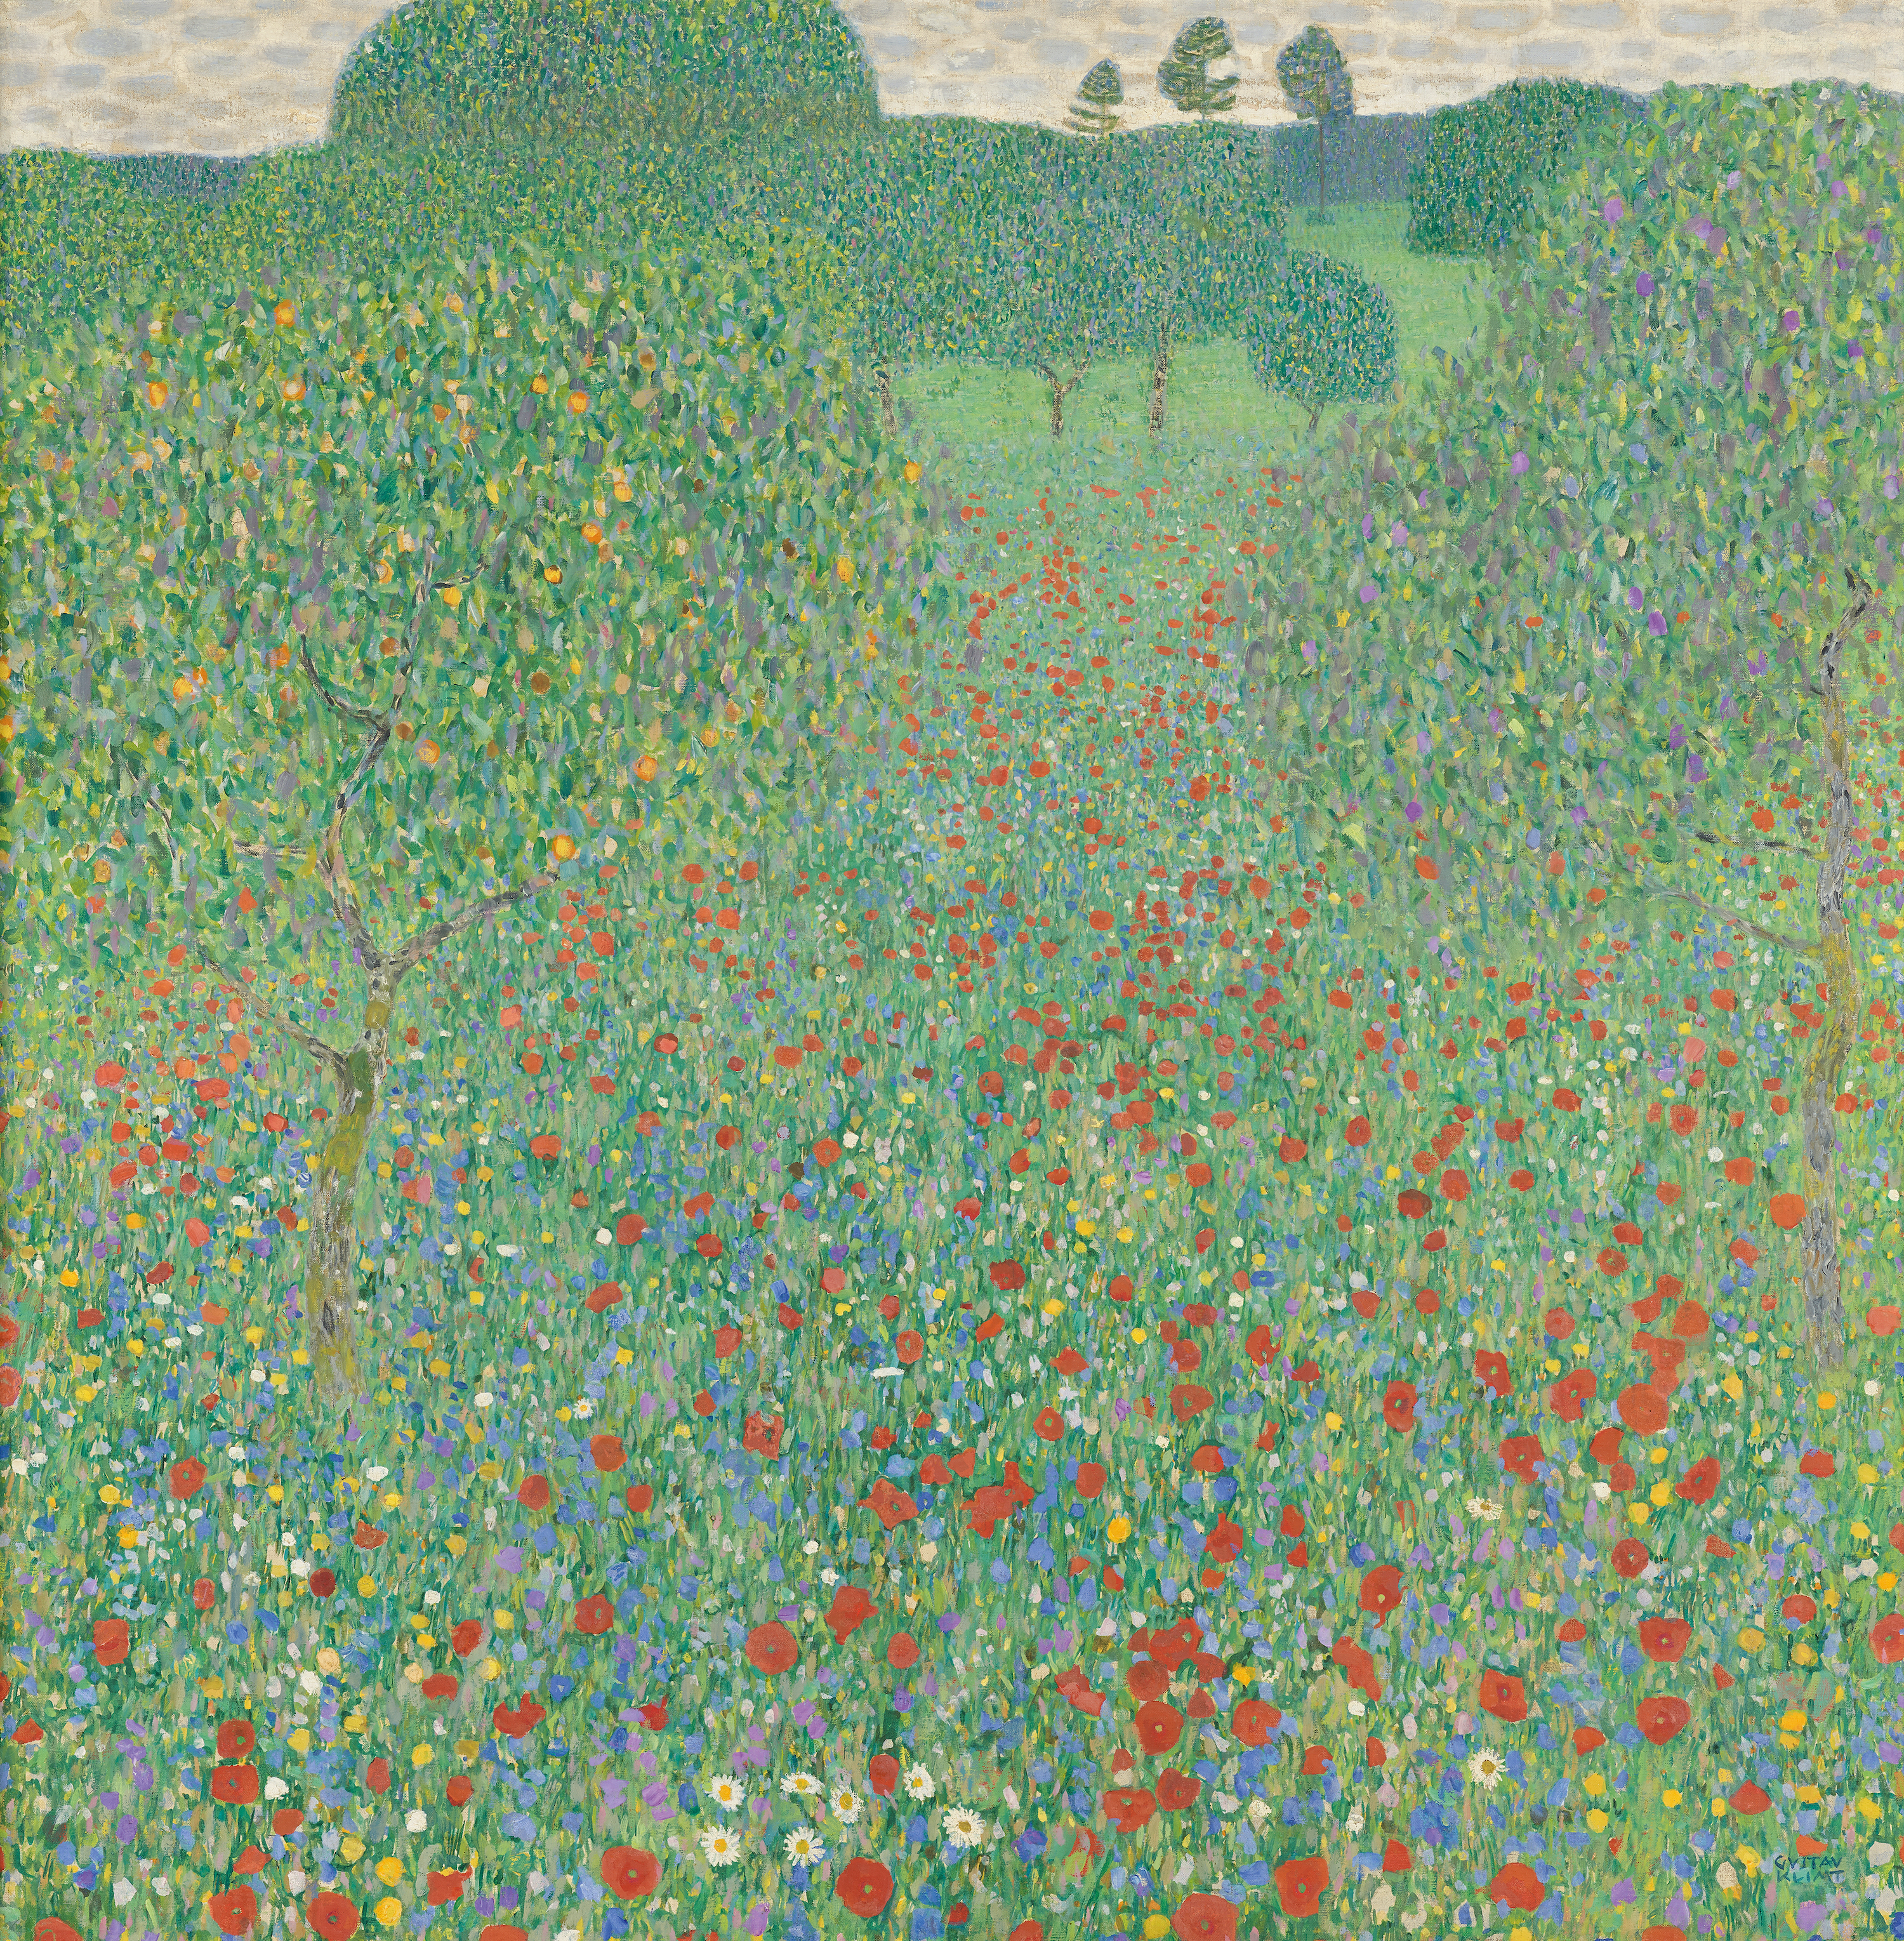 Макове поле by Gustav Klimt - 1907 - 110 x 110 см 